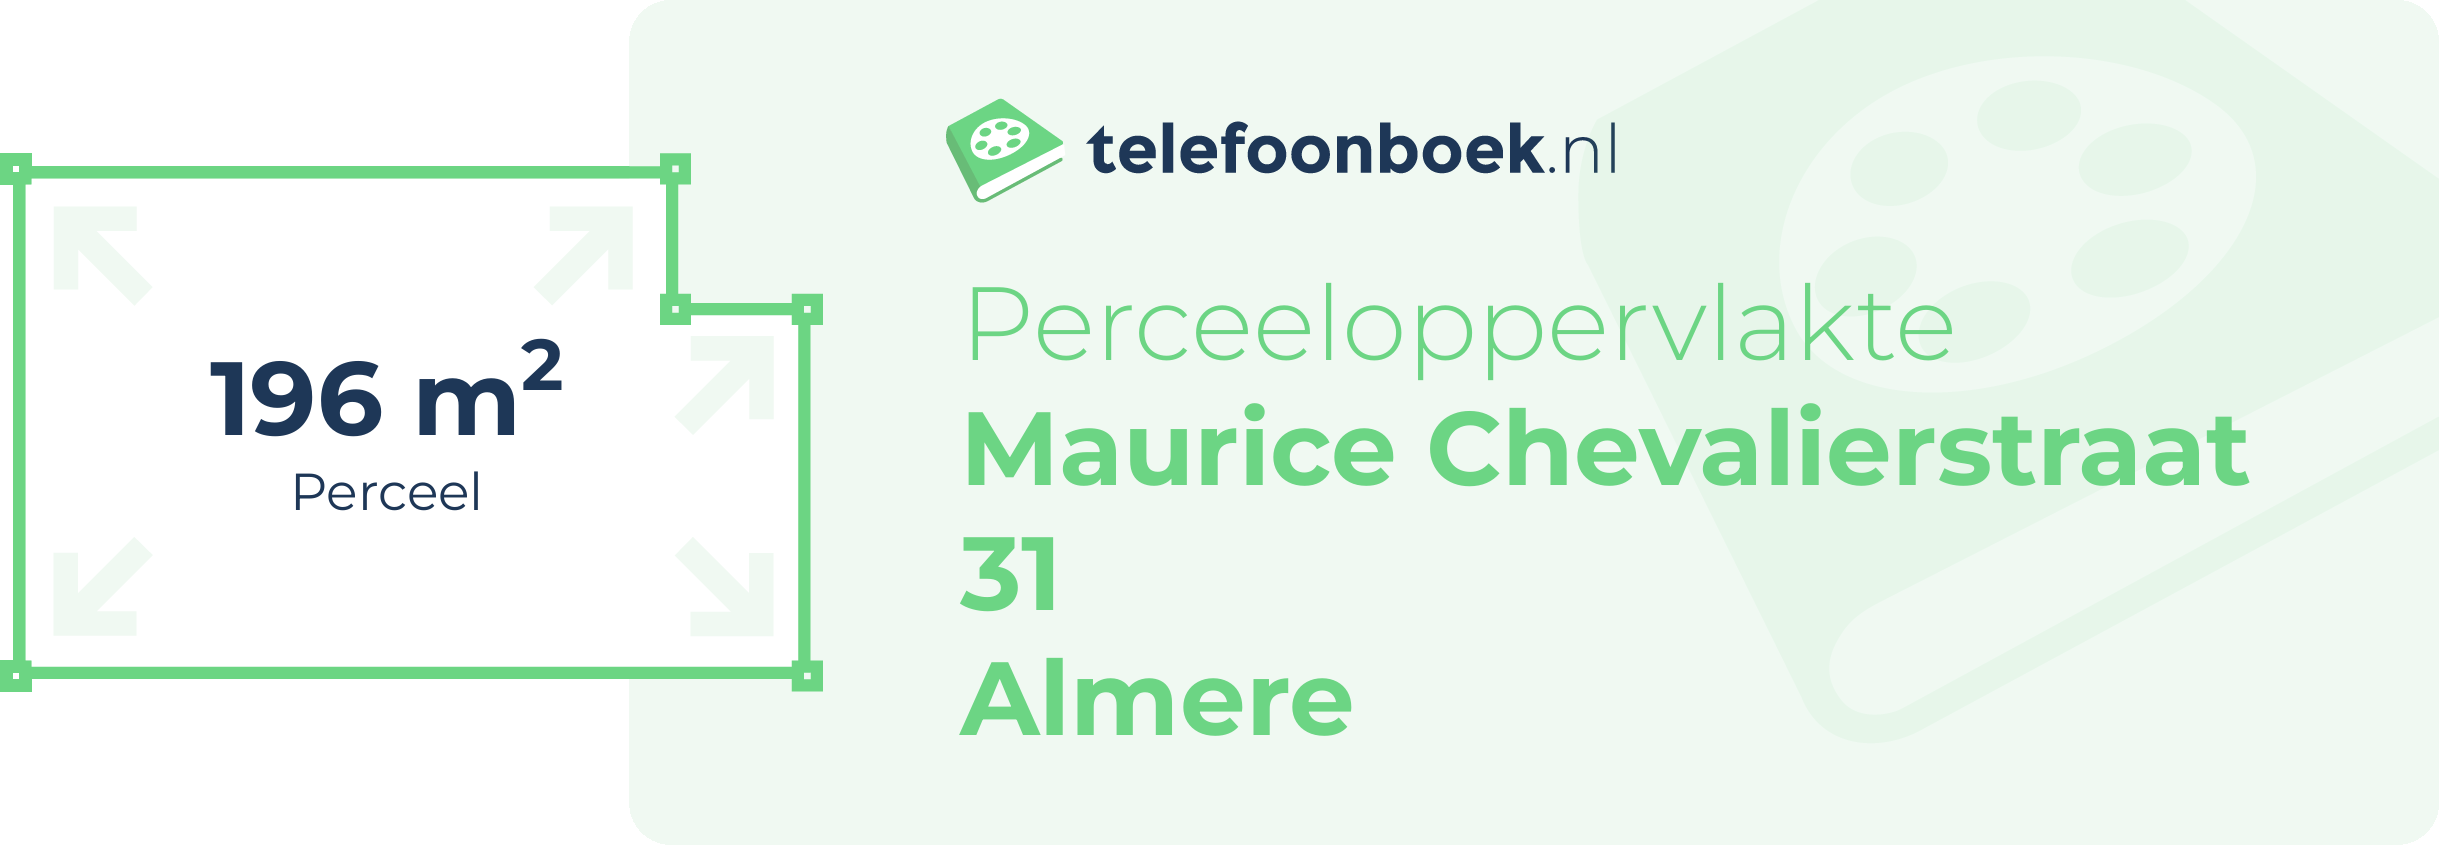 Perceeloppervlakte Maurice Chevalierstraat 31 Almere